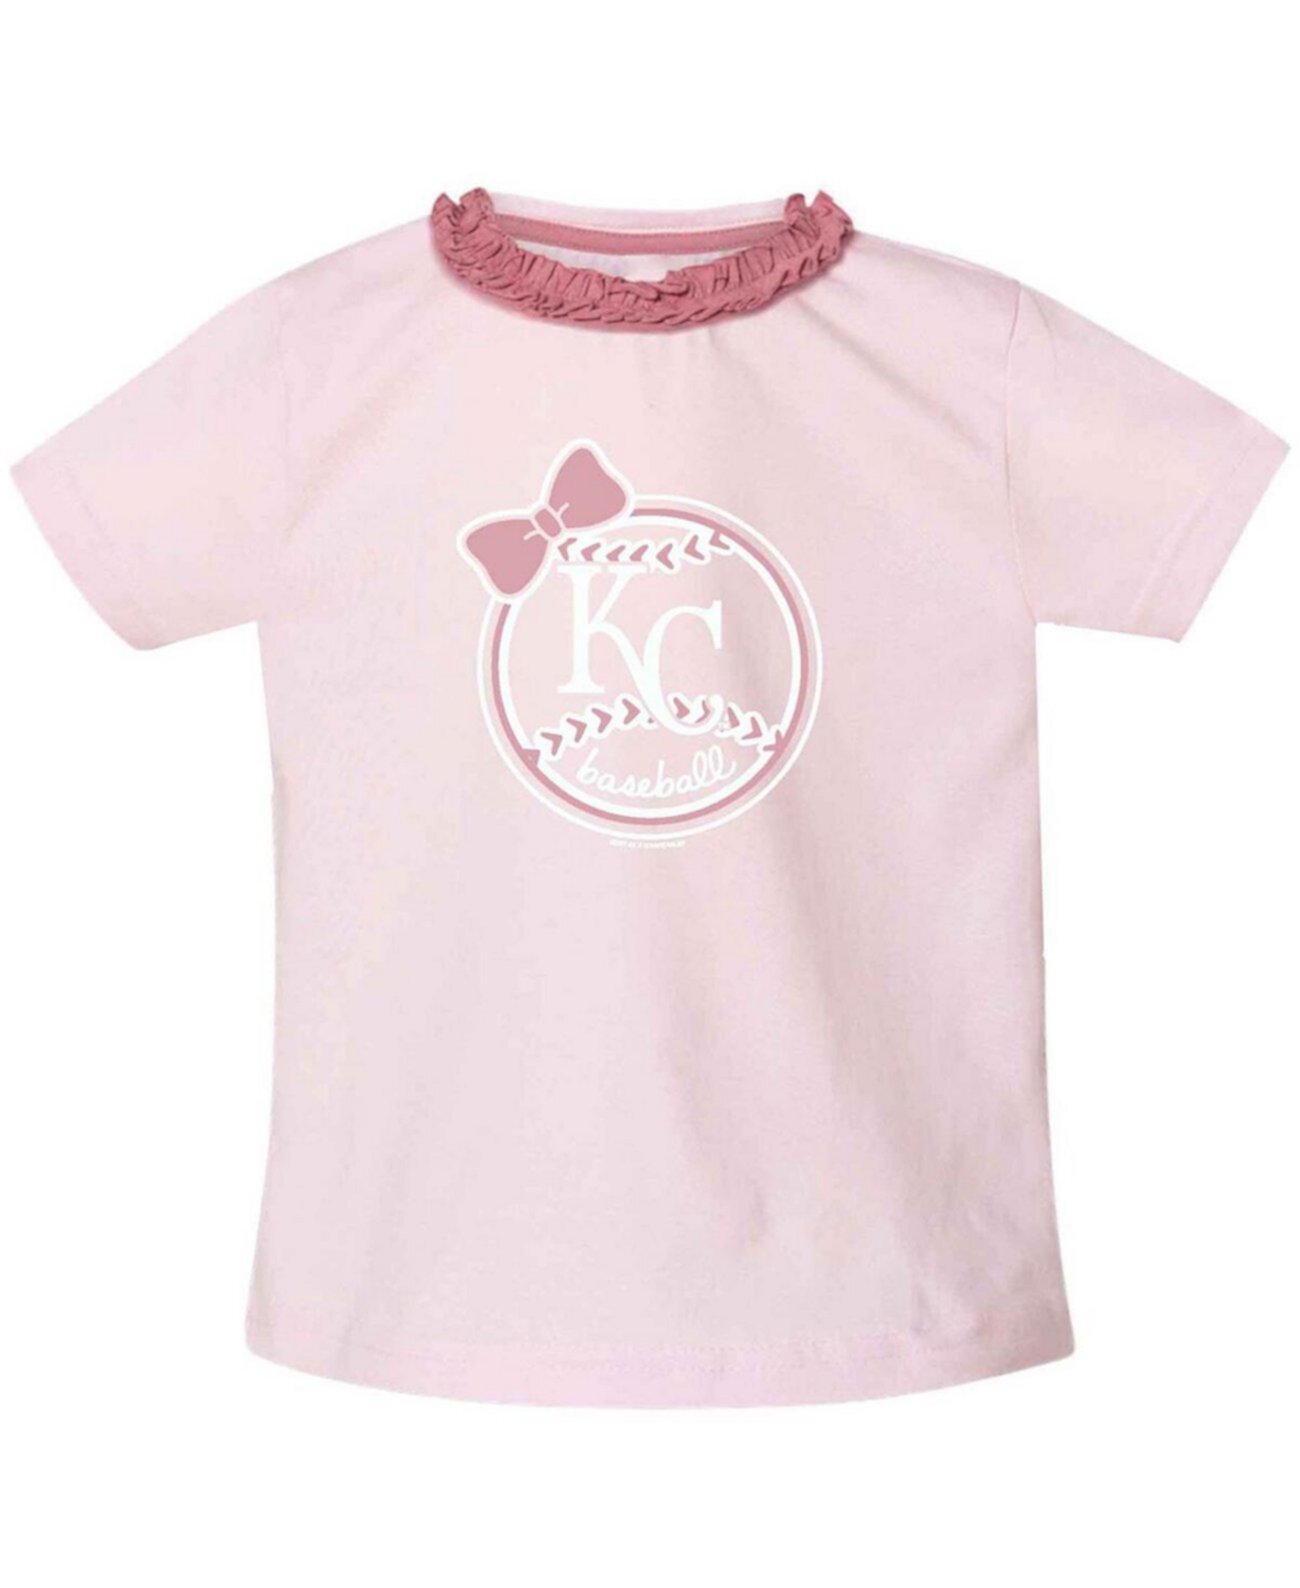 Розовая футболка Kansas City Royals с рюшами и воротником для девочек для малышей Soft As A Grape